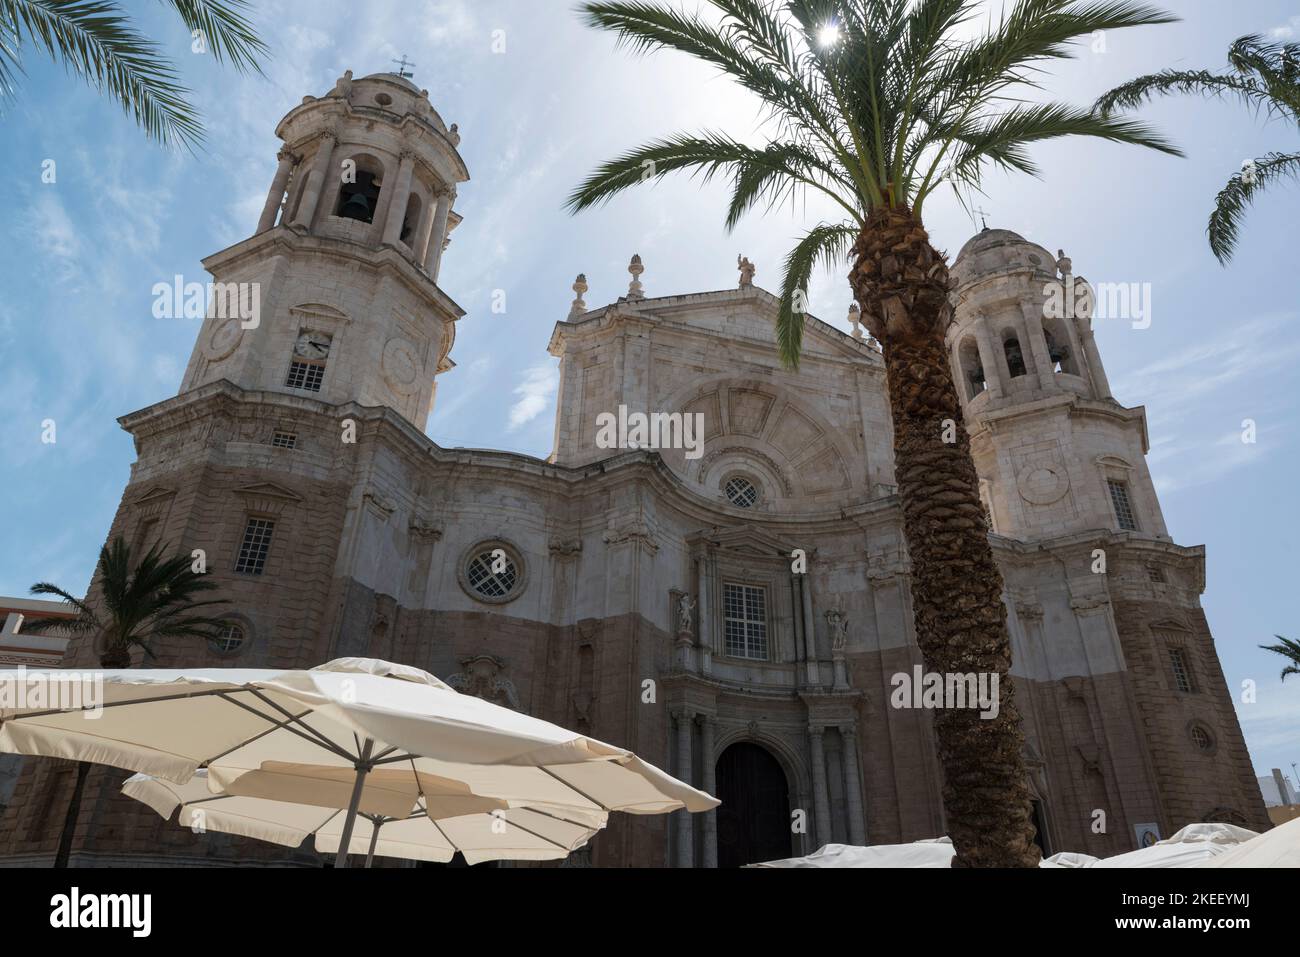 La Catedral de Cadix vue d'en dessous. Cadix, Espagne. Banque D'Images